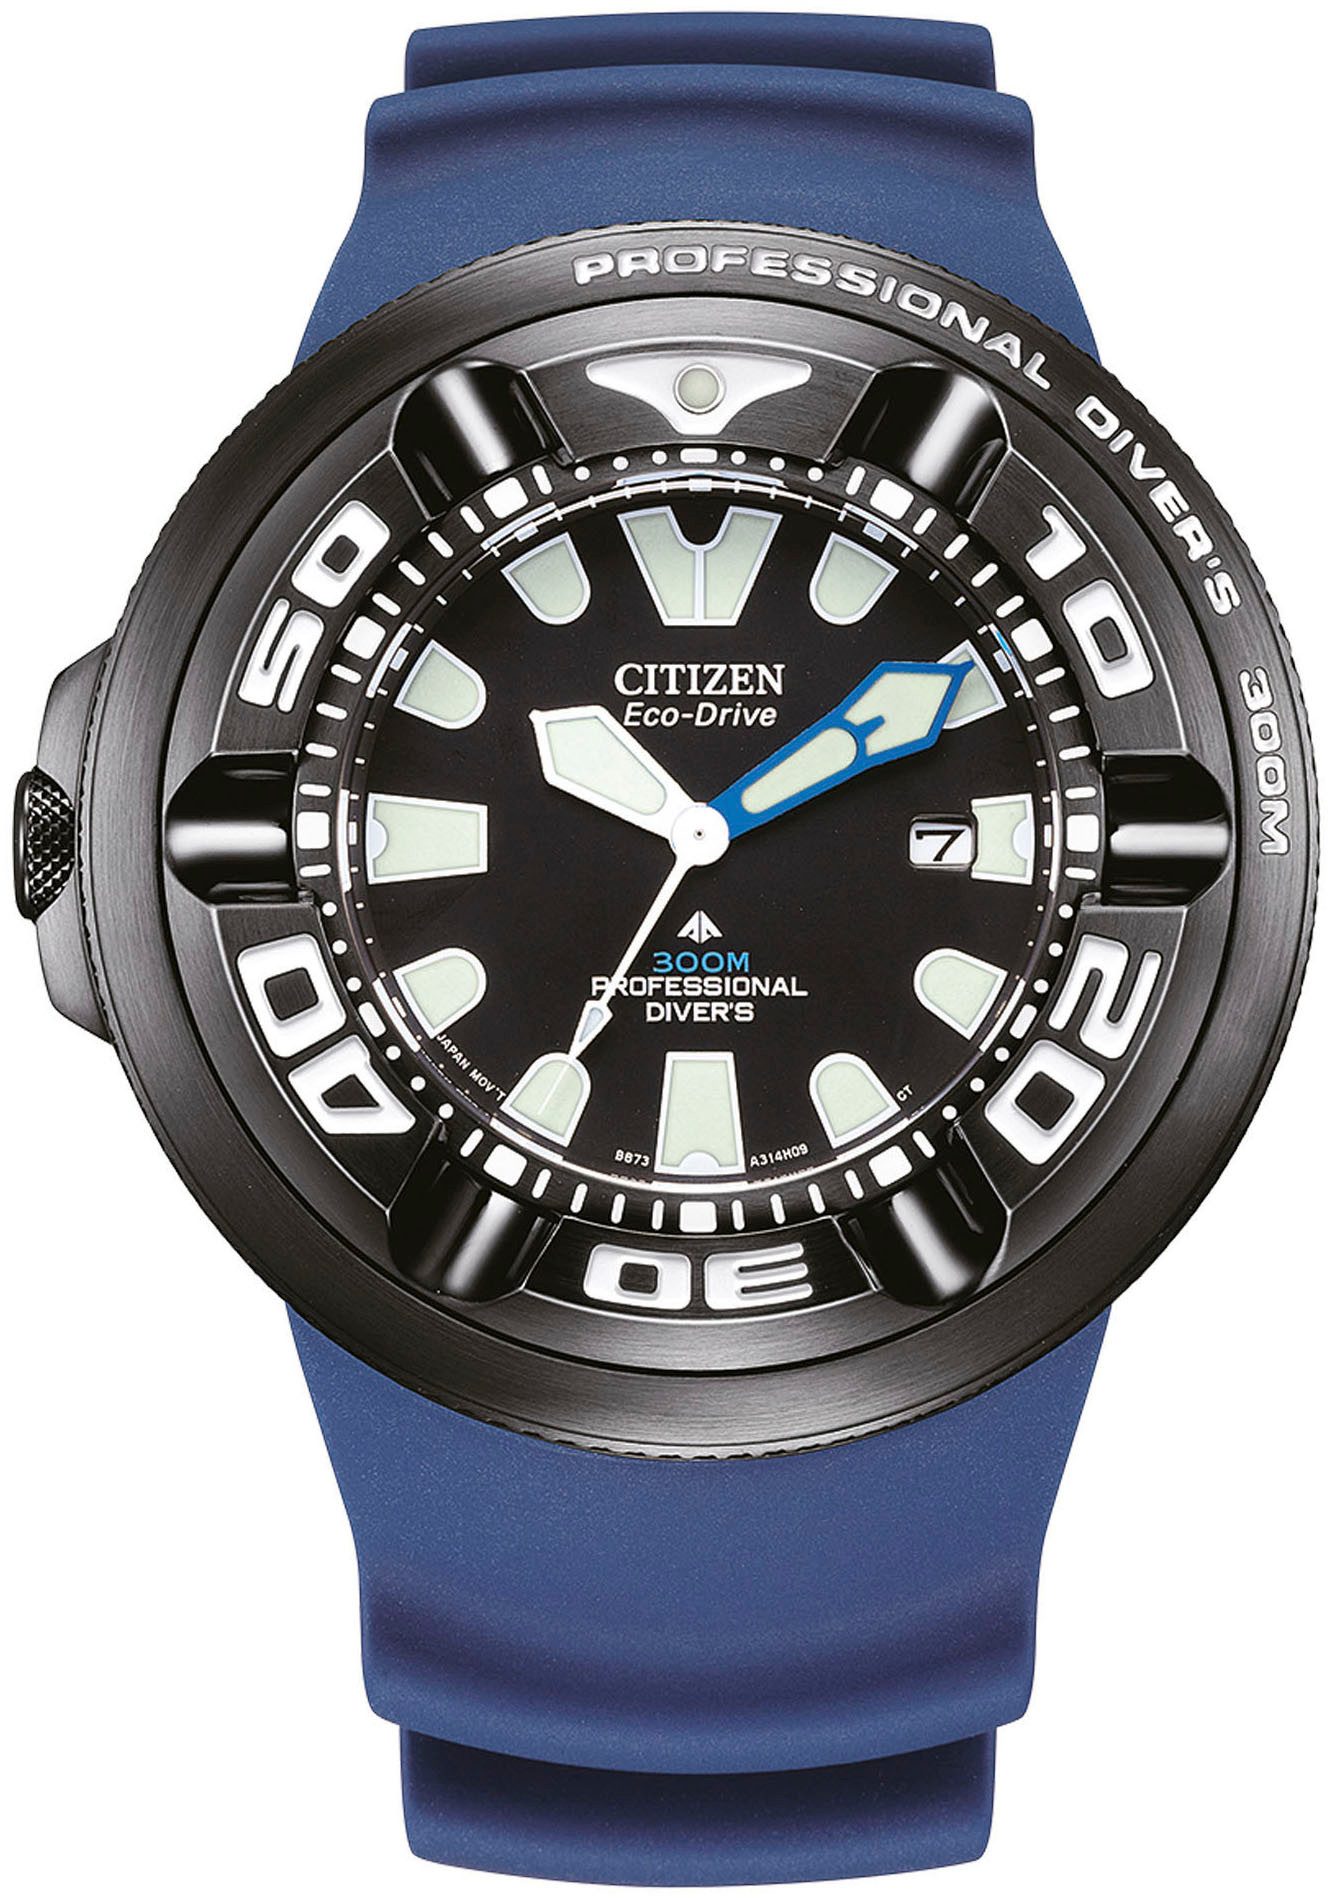 Citizen Taucheruhr Promaster Professional Diver 300, Armbanduhr, Herrenuhr, Solar, bis 30 bar wasserdicht, Datum